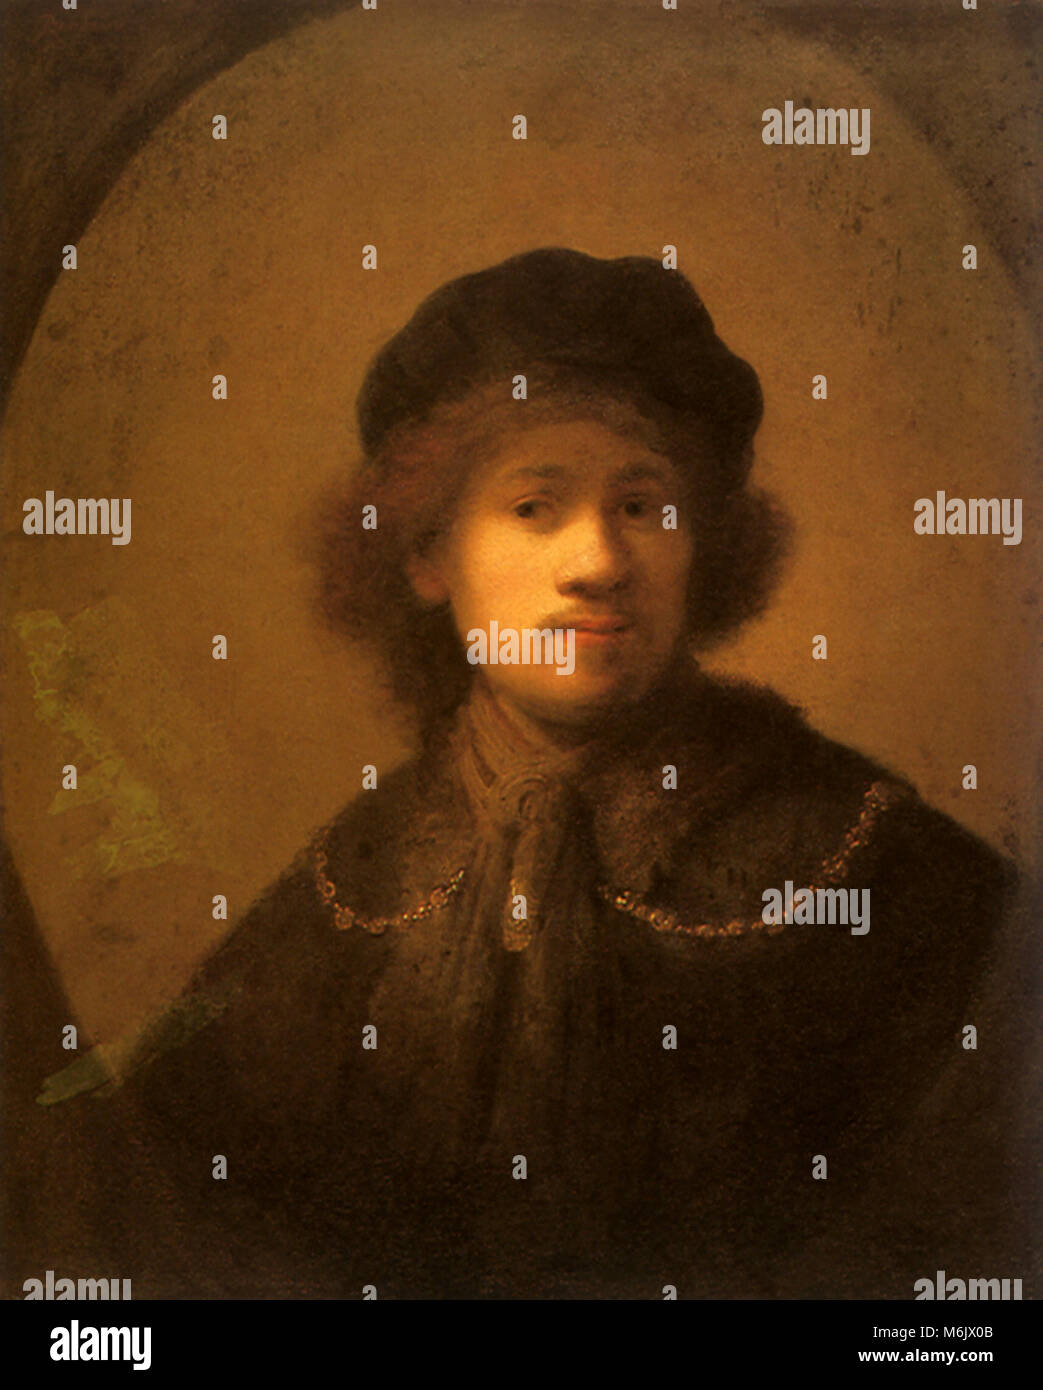 Autoritratto di Rembrandt, Rembrandt Harmensz van Rijn, 1630. Foto Stock